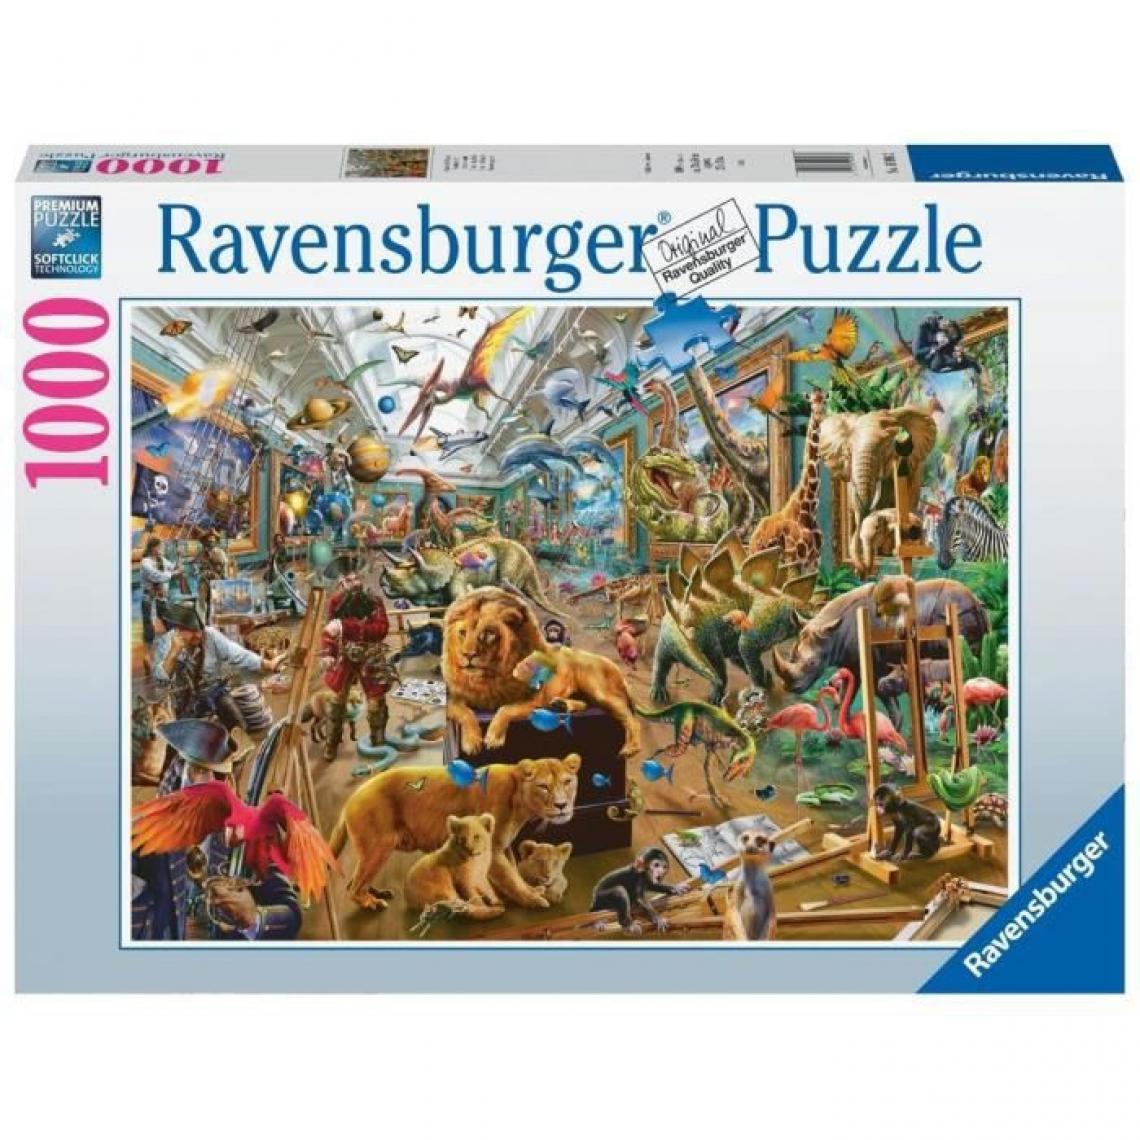 Ravensburger - Ravensburger - Puzzle 1000 pieces - Le musée vivant - Animaux